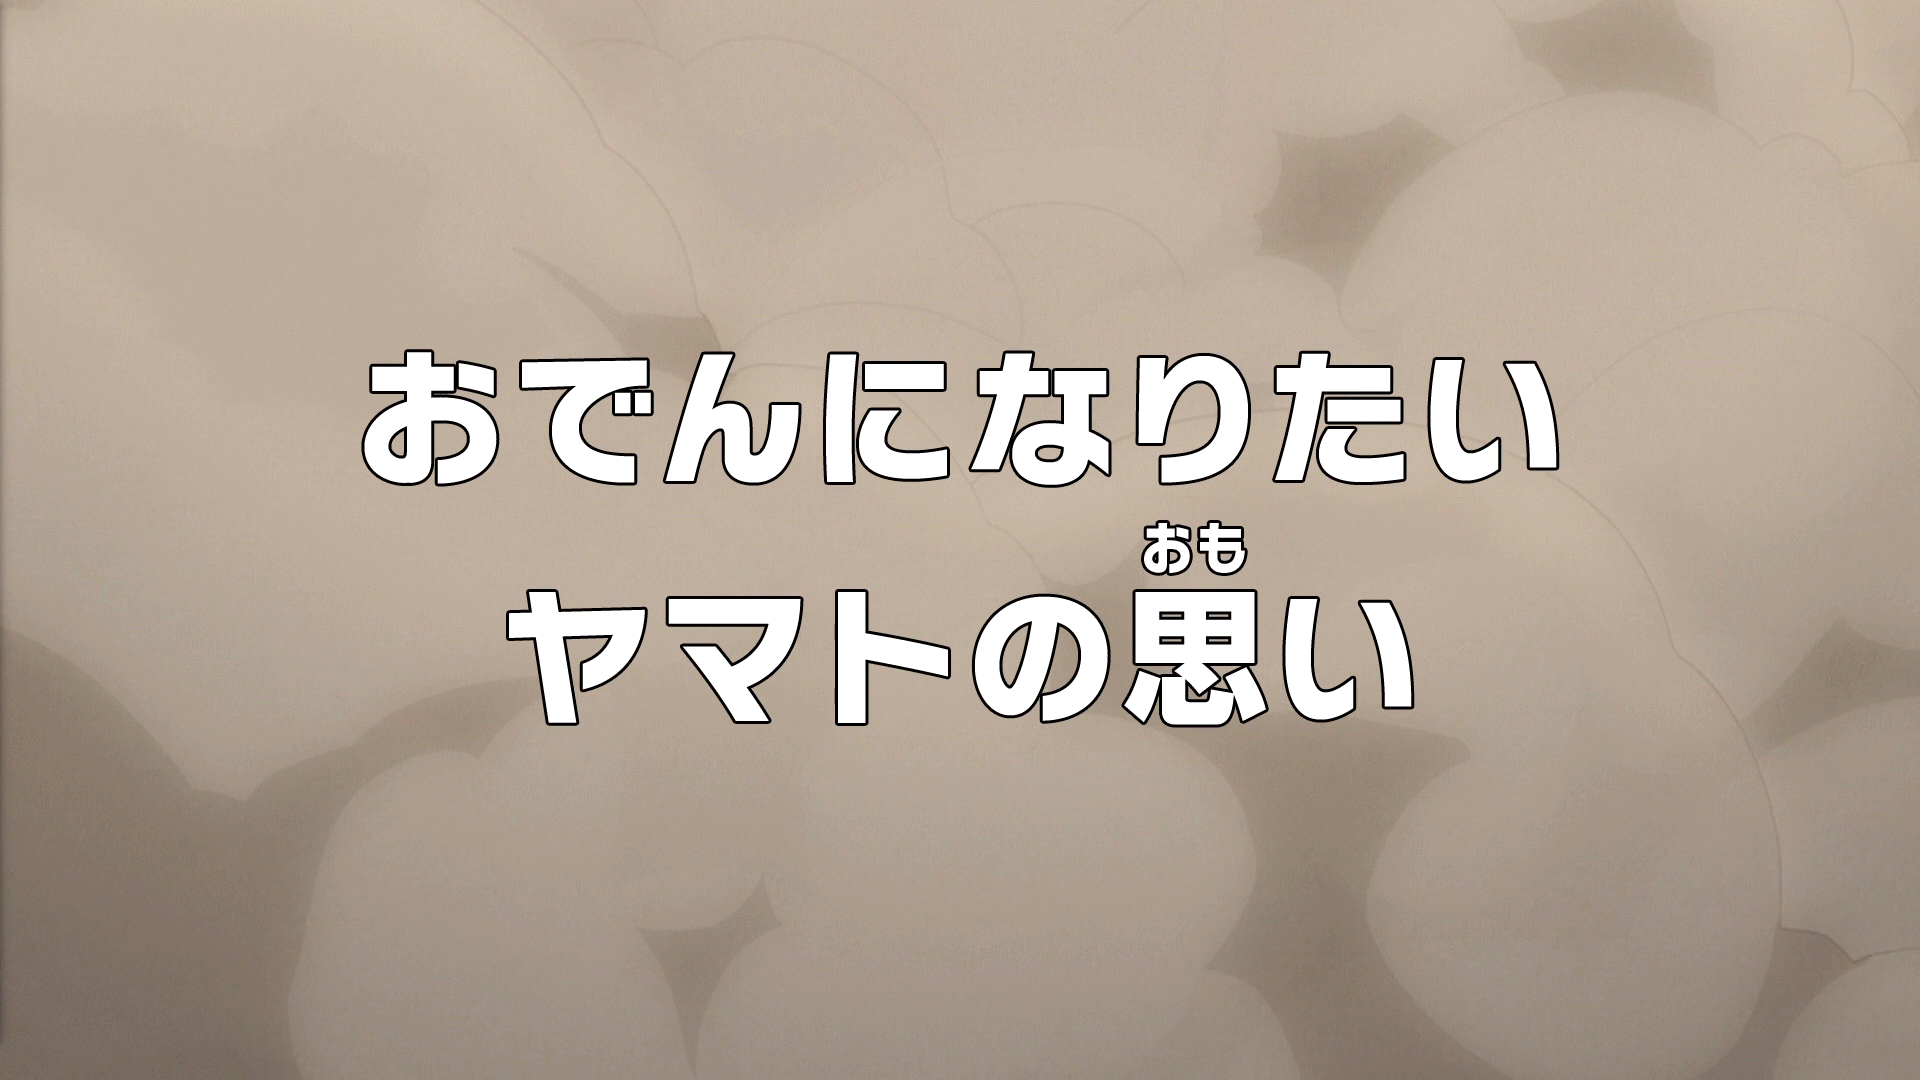 Episode 992 One Piece Wiki Fandom